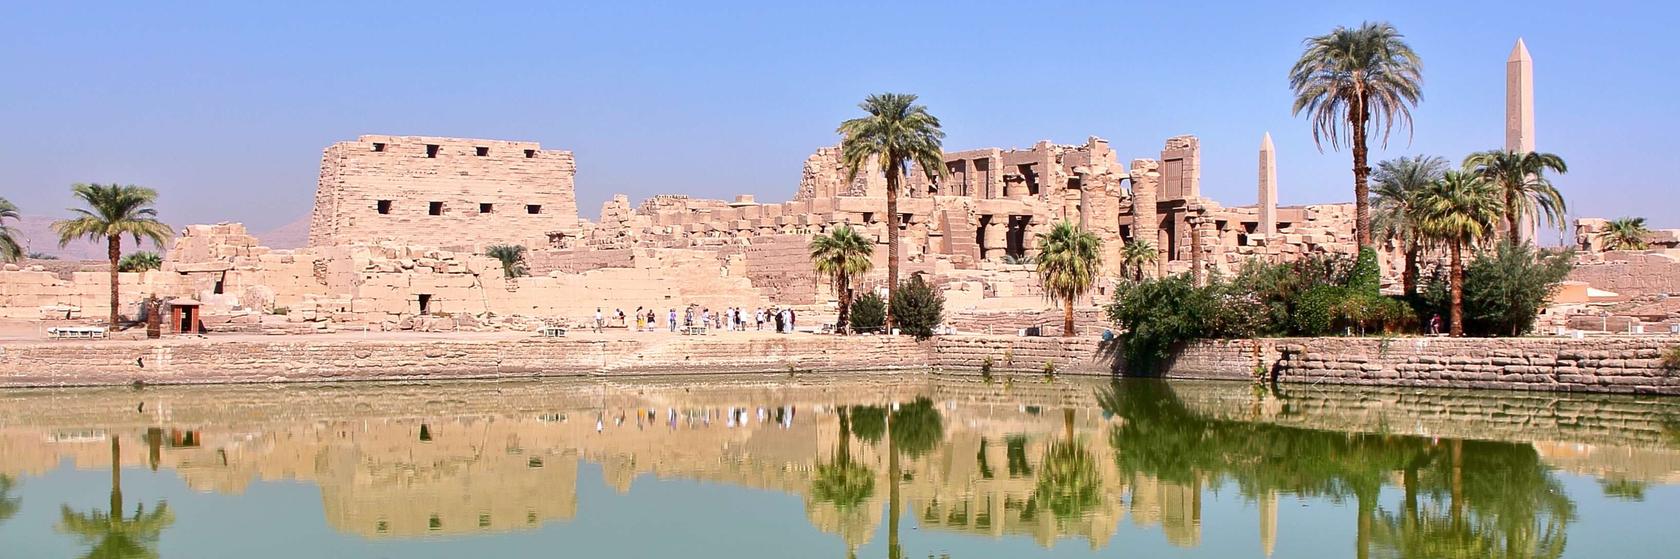 Místa od Luxoru přes Lybijskou poušť až po Asuán, které musíte navštívit